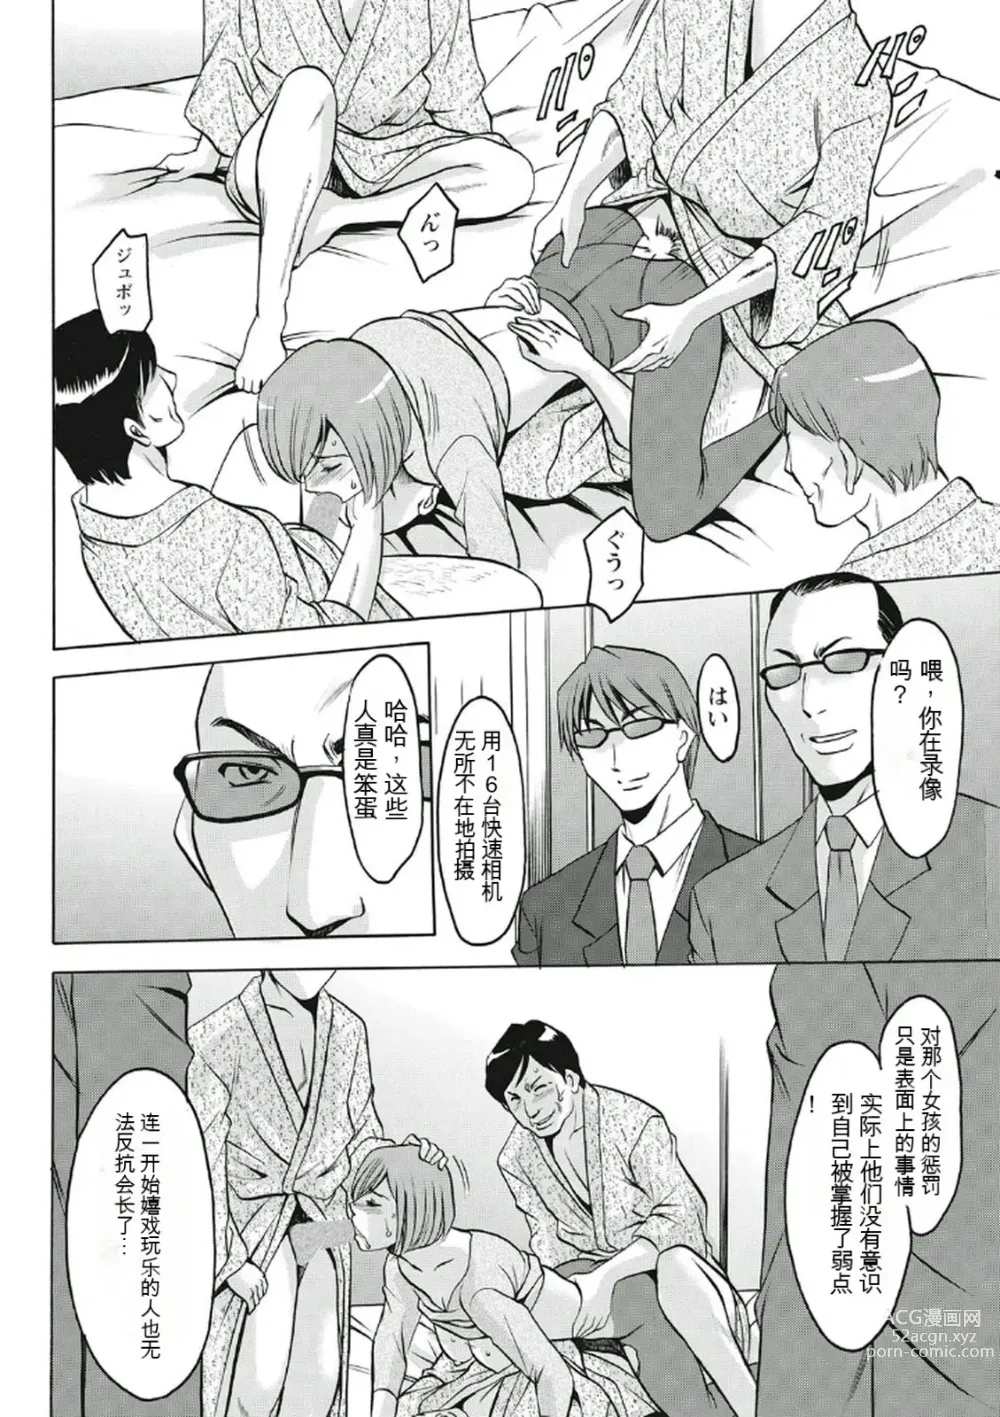 Page 192 of manga Chijoku Byoutou -Hakui no Datenshi-